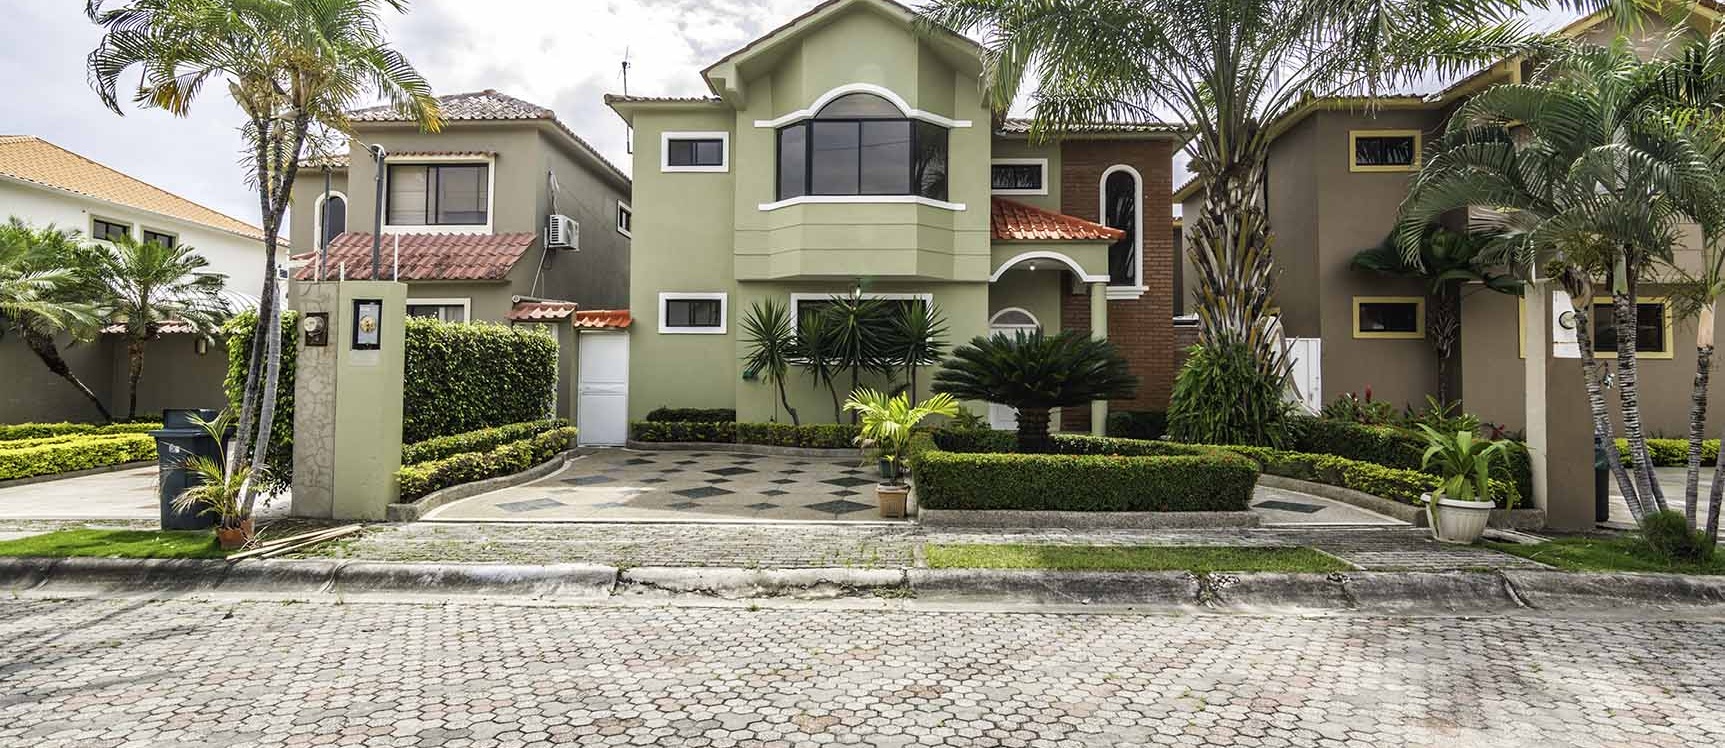 GeoBienes - Casa en alquiler Urb. Vía al Sol, Vía a la Costa - Plusvalia Guayaquil Casas de venta y alquiler Inmobiliaria Ecuador